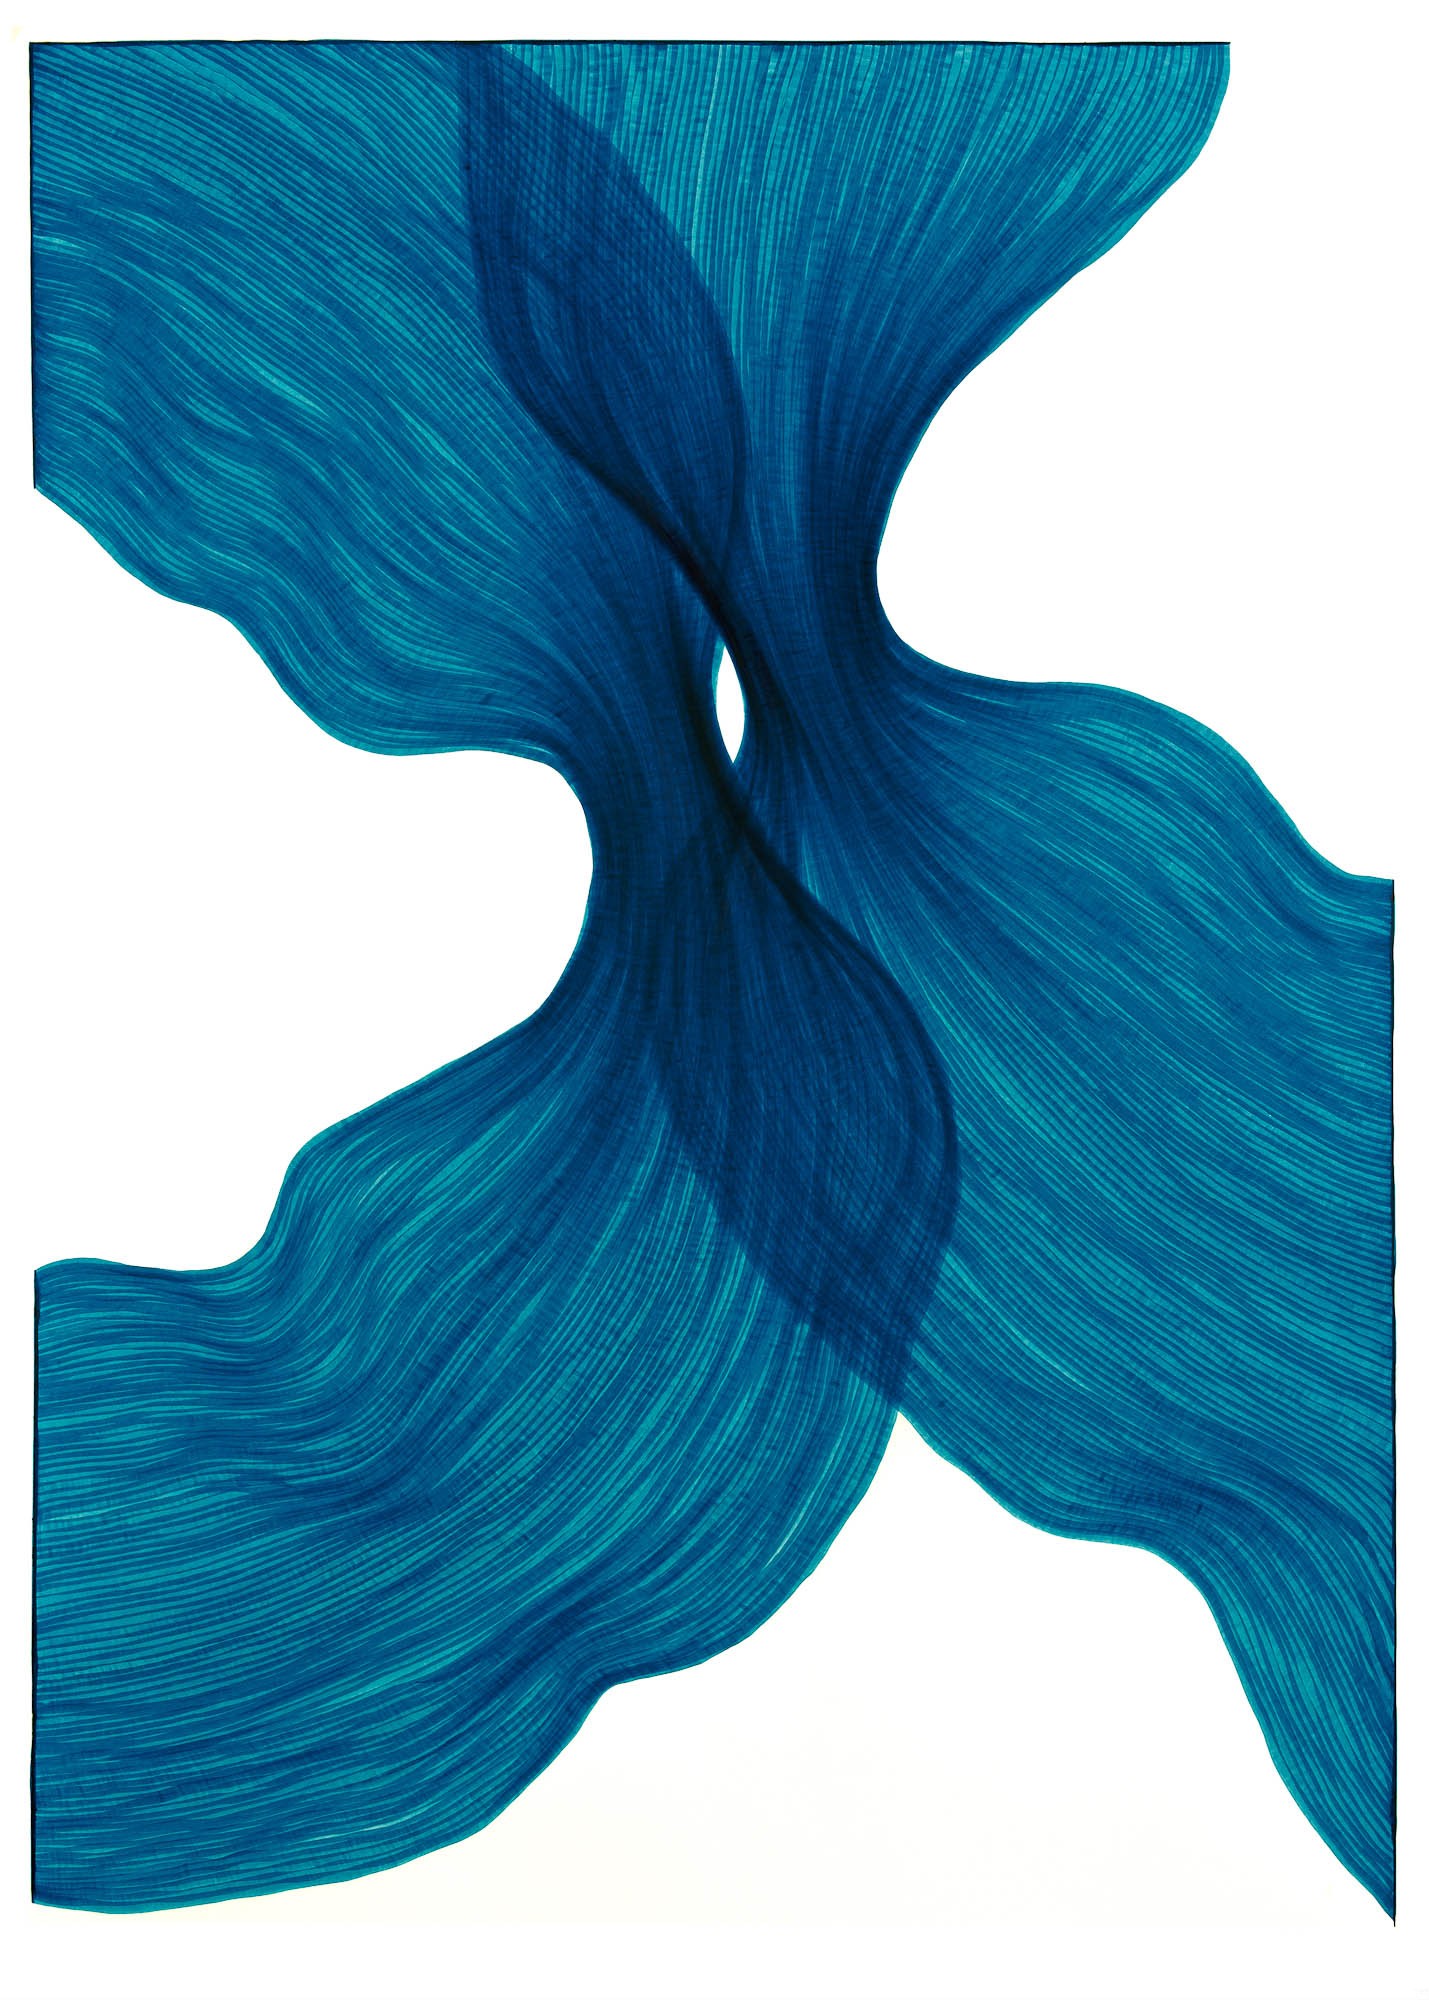 Sea Blue Sheer Folds | Lali Torma | Zeichnung | Kalligraphietusche auf Papier